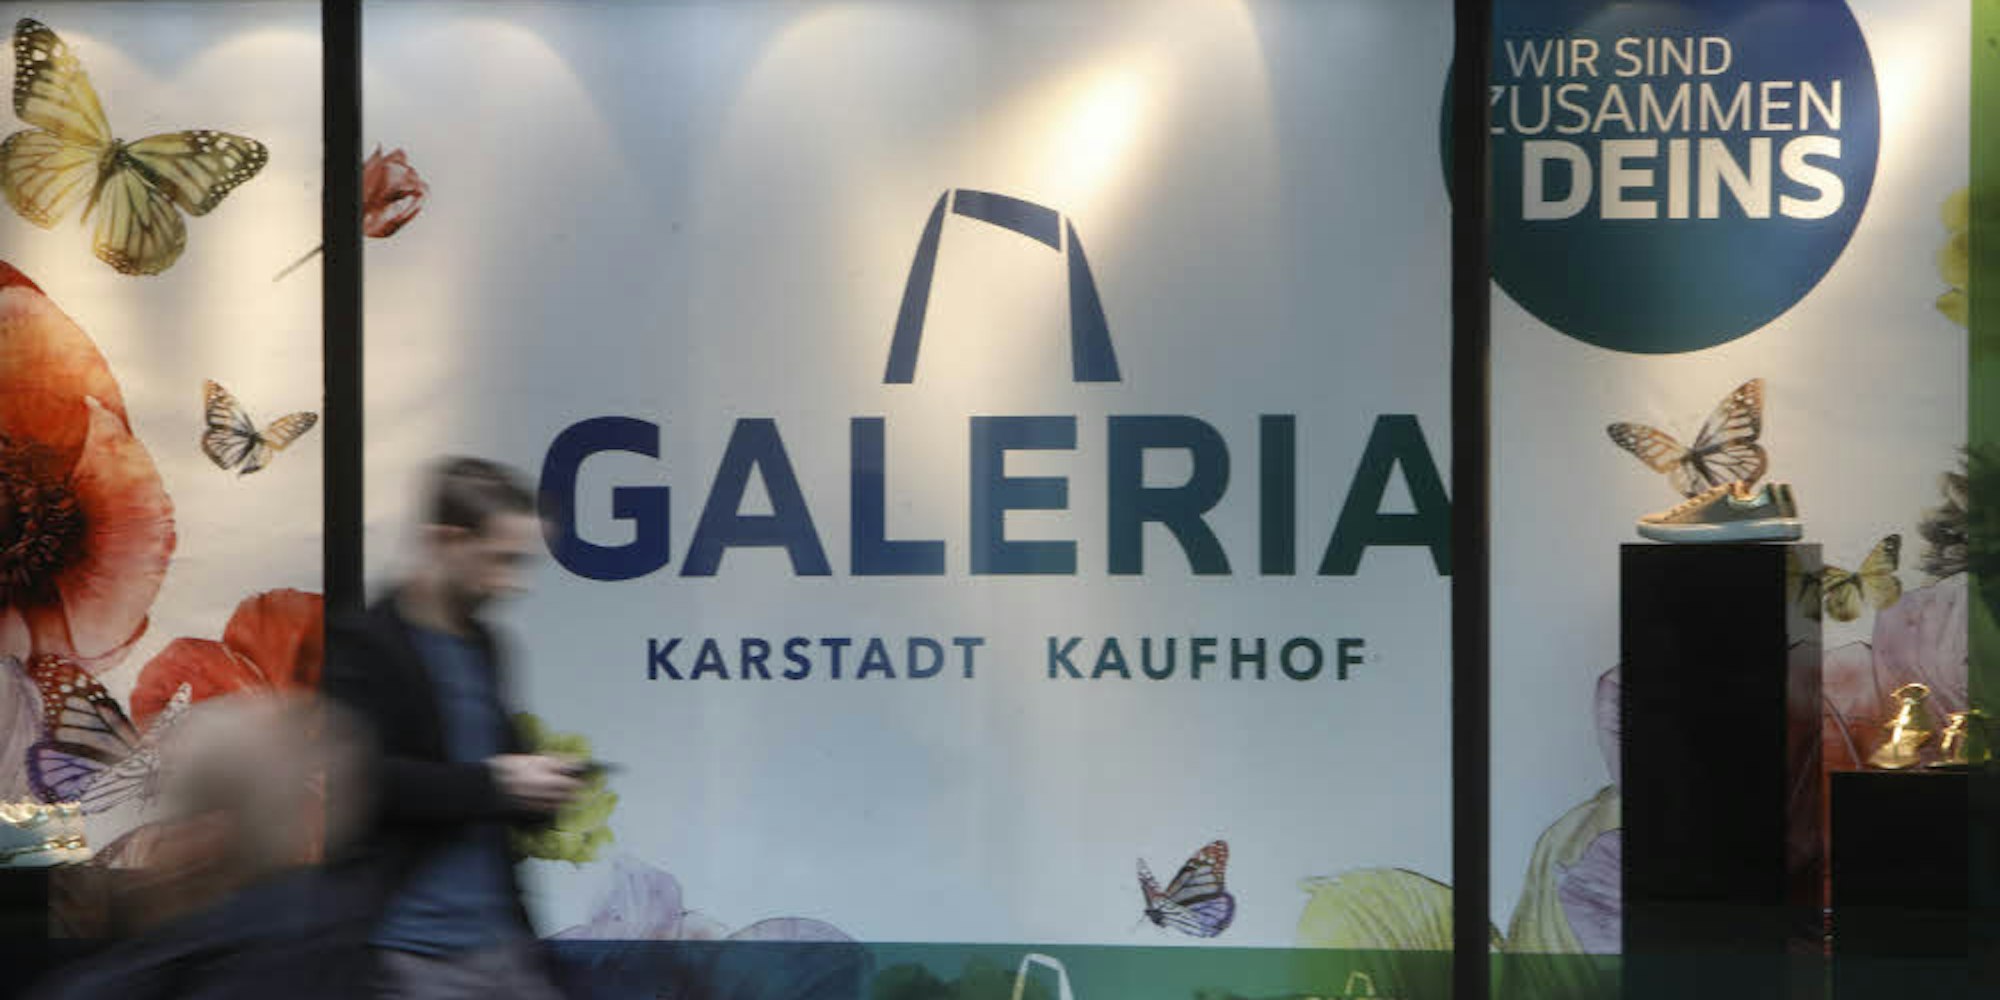 Das neue Logo enthält Elemente der fusionierten Warenhausunternehmen Karstadt und Kaufhof.